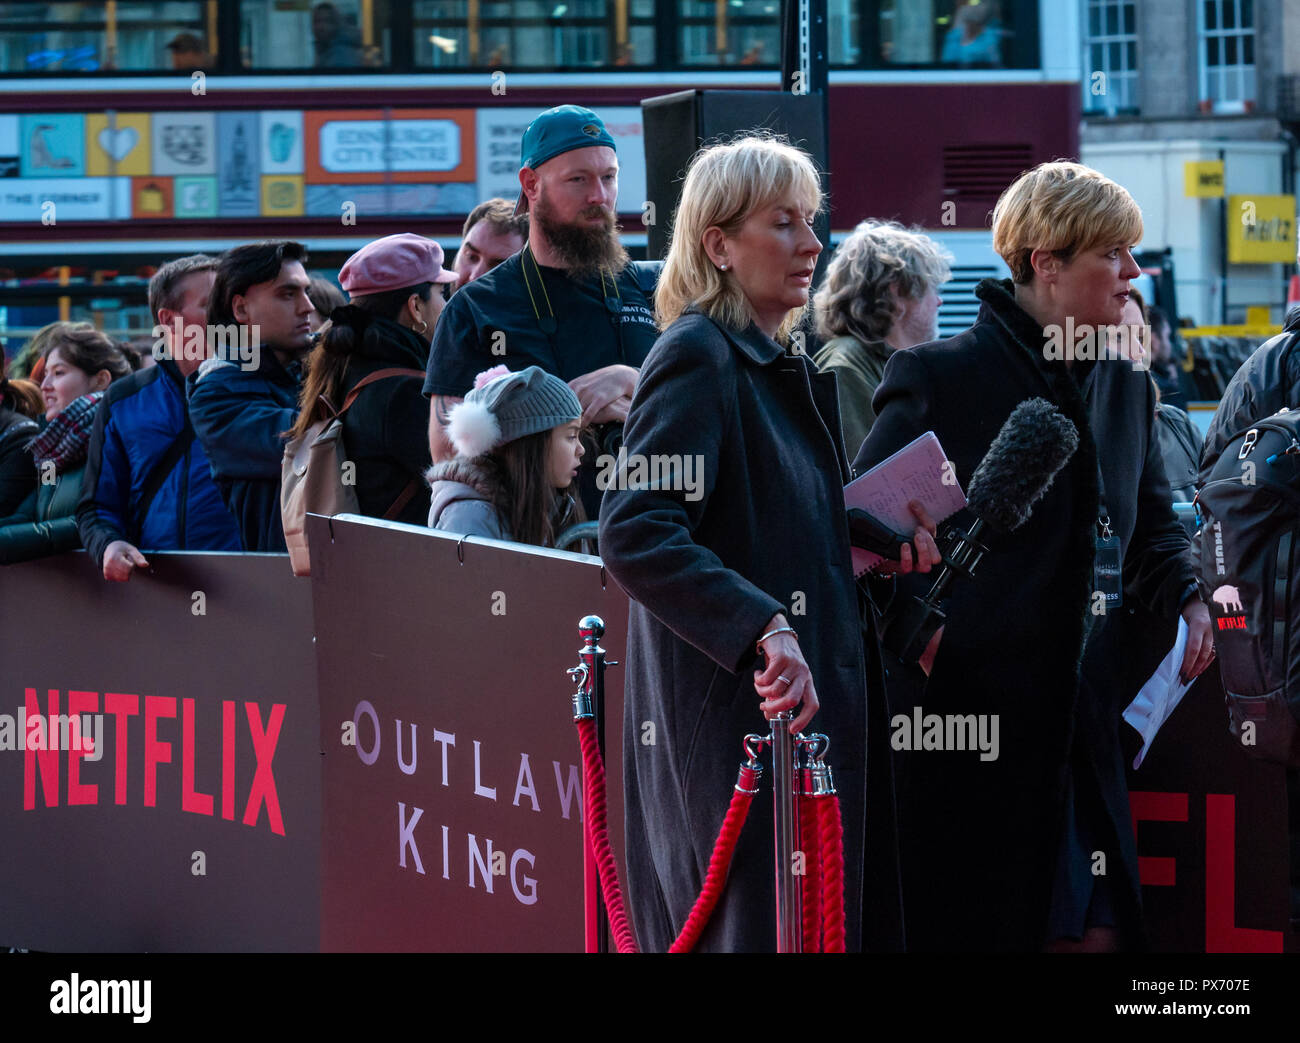 Journalisten warten Stars bei Netflix Outlaw König Schottischen premiere Vue Omni, Edinburgh, Schottland, Großbritannien Stockfoto